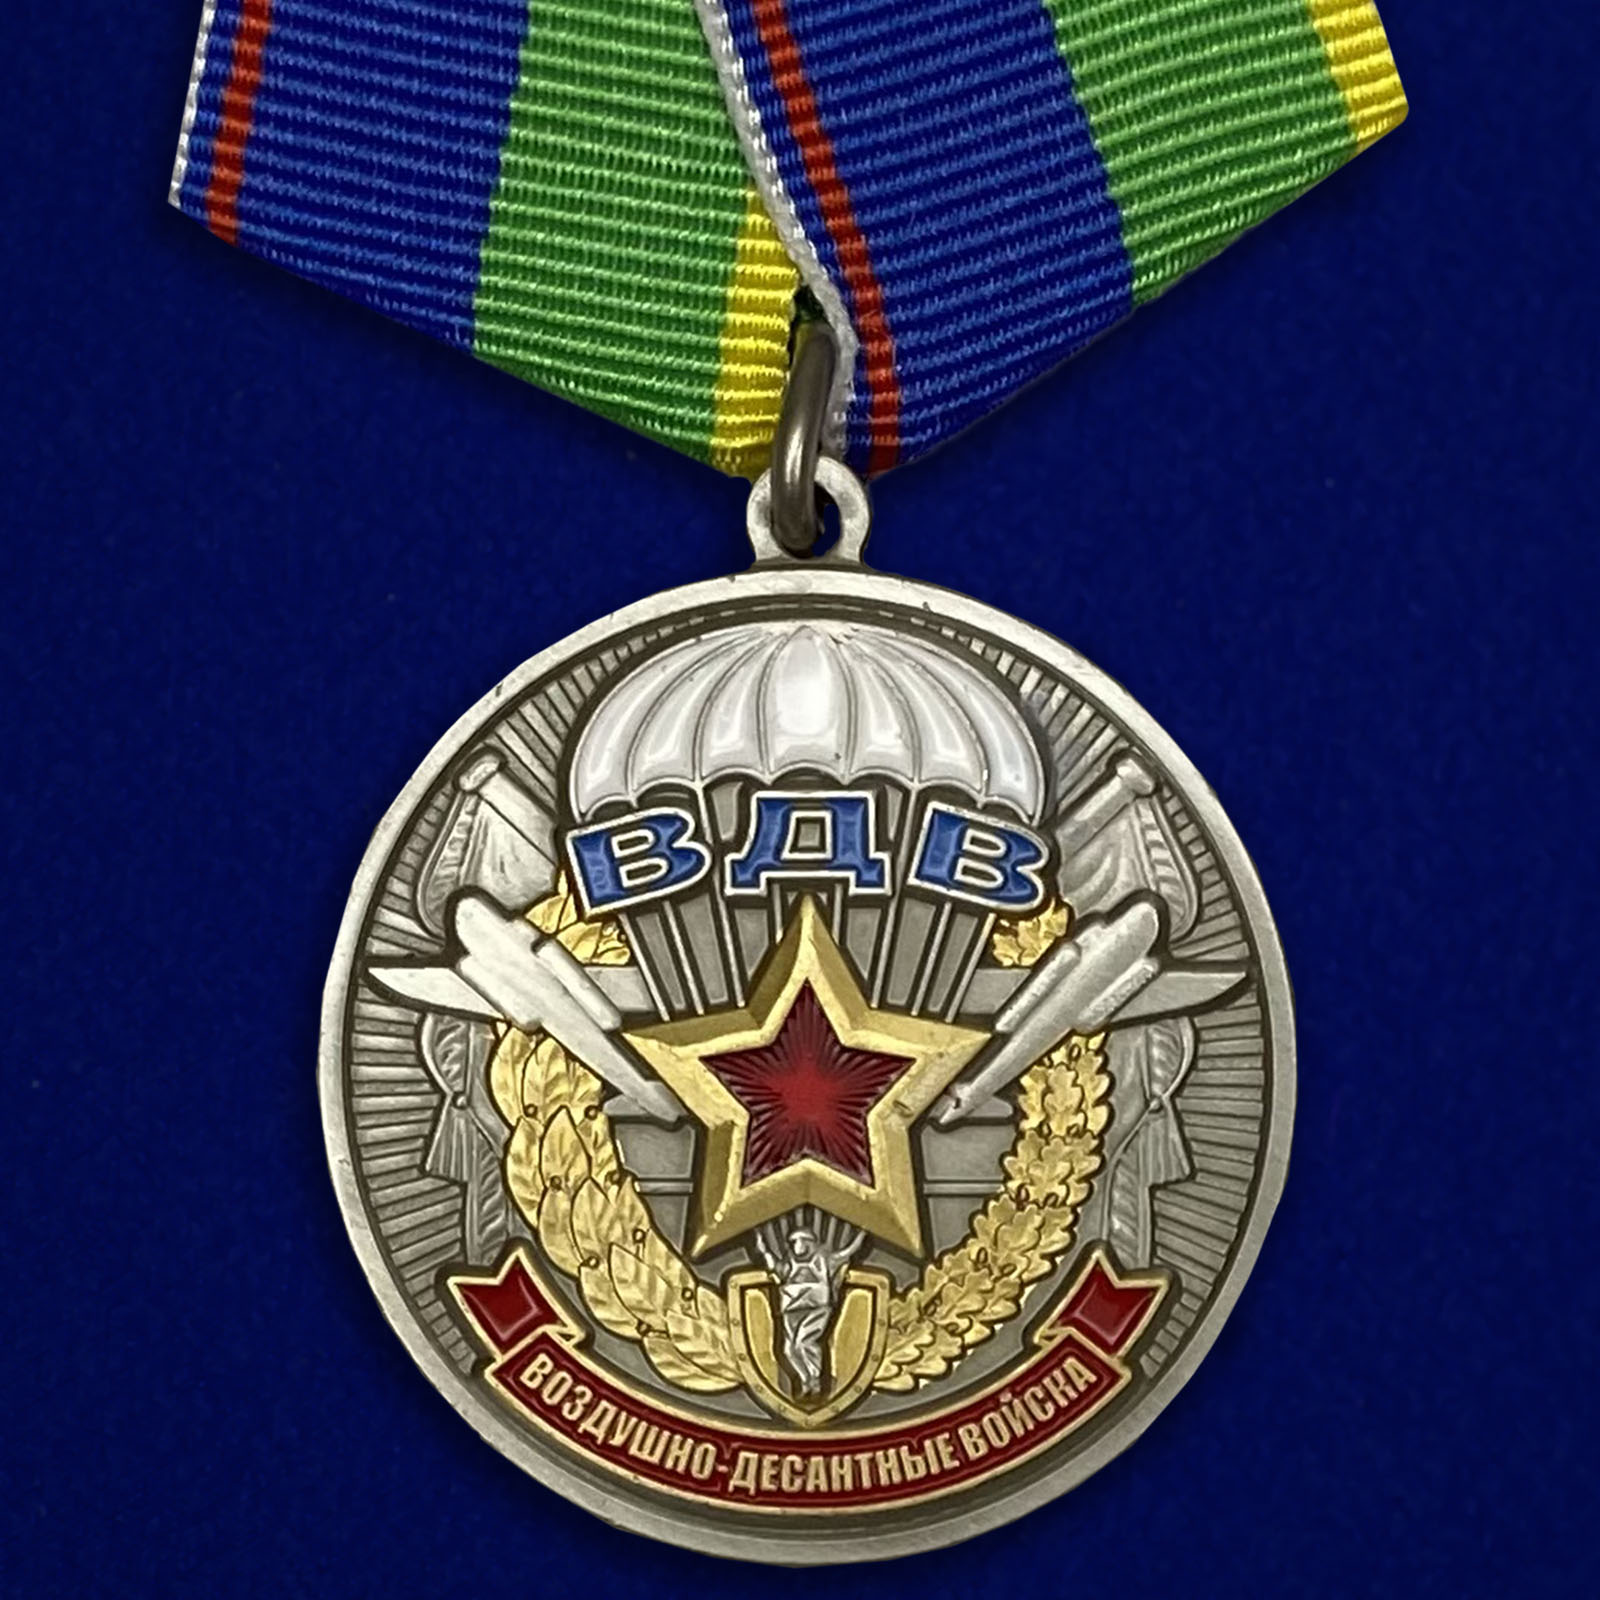 Купить медаль Ветерану воздушно-десантных войск на подставке в подарок